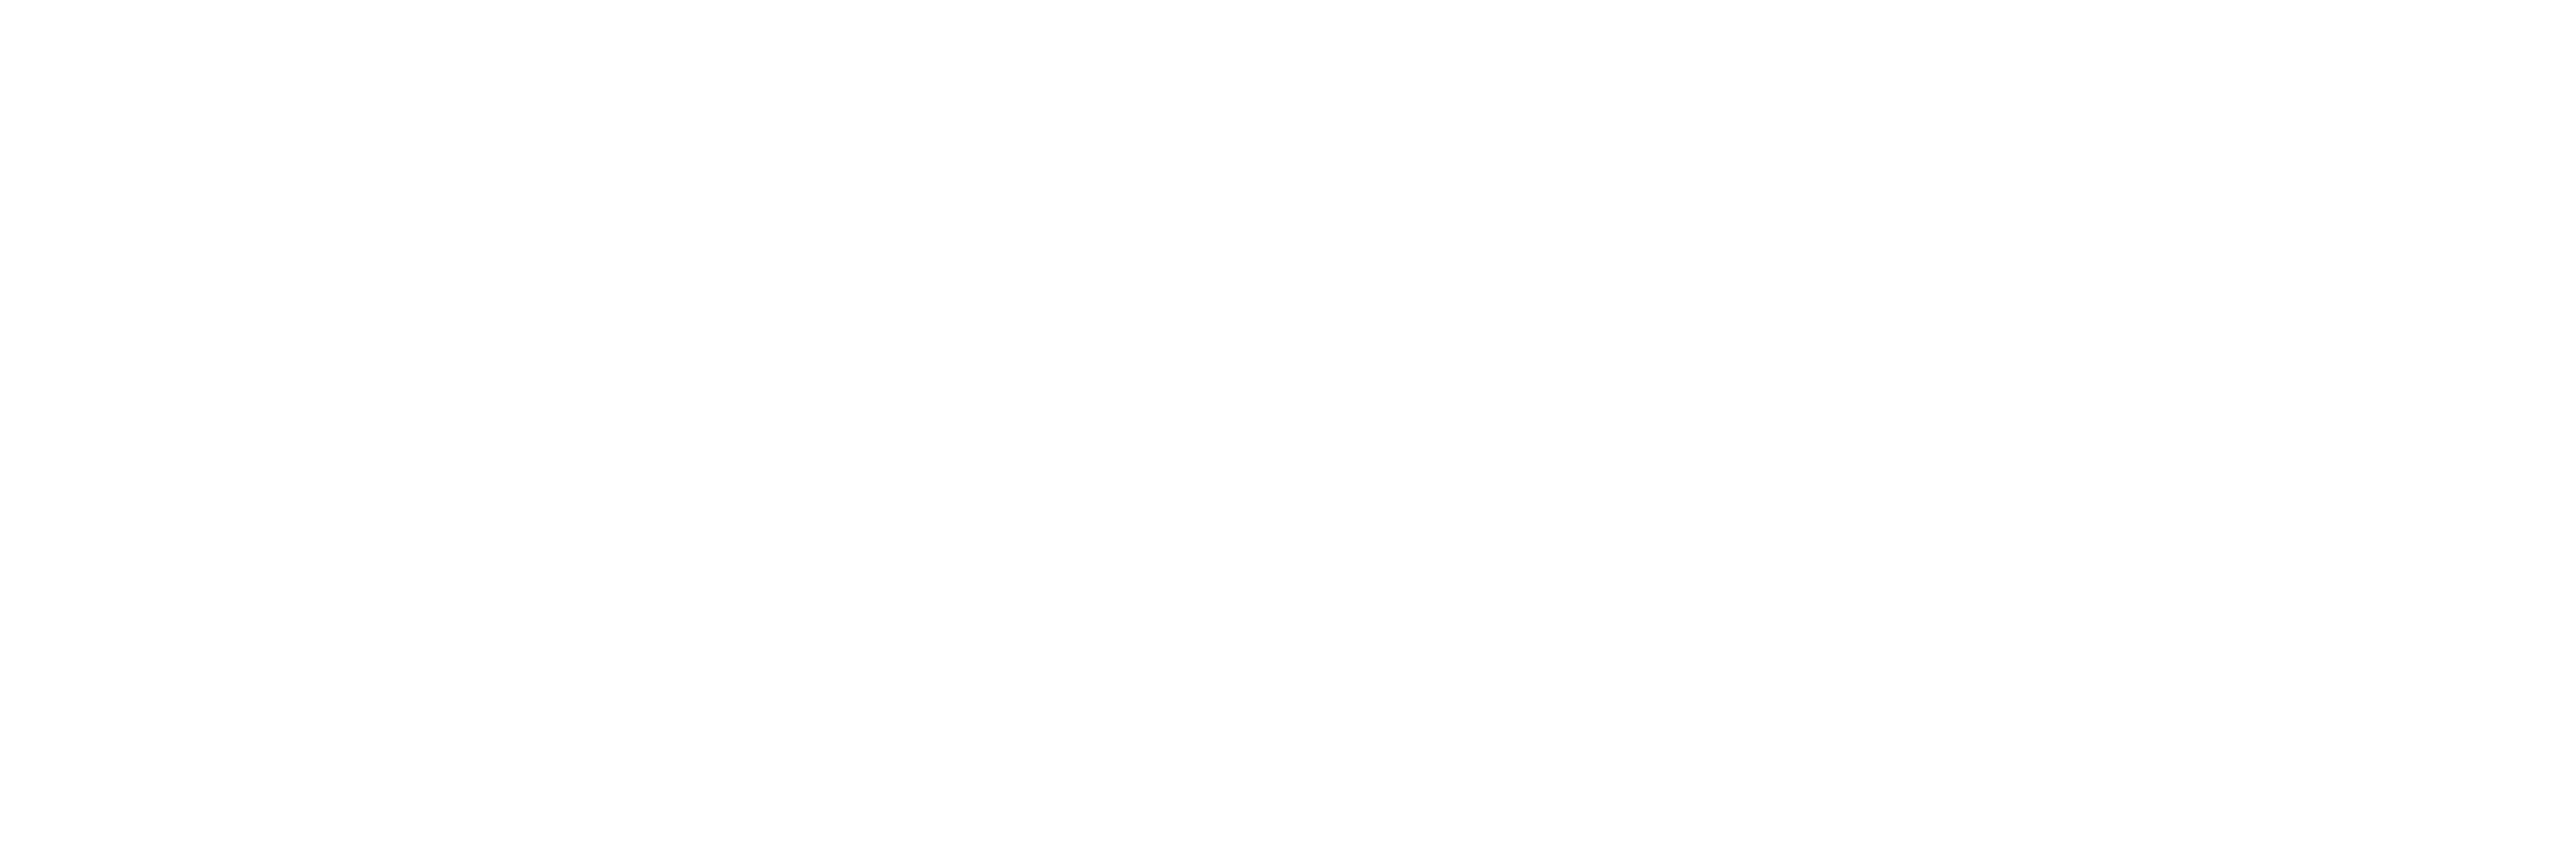 PCDC Consortium